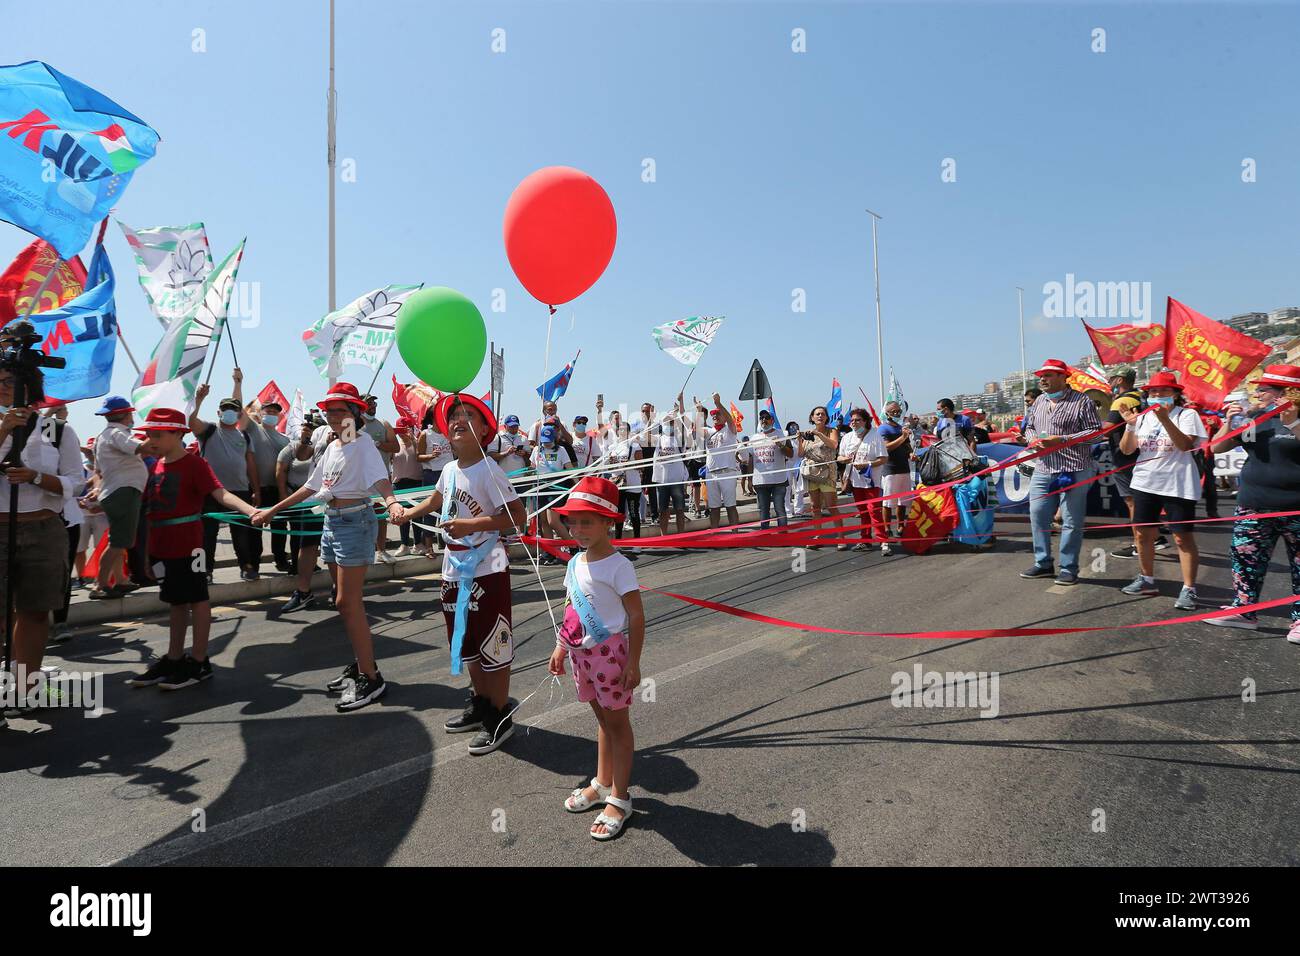 Gli operai della vasca idromassaggio durante la marcia di protesta a Napoli, con alcuni figli di operai e palloncini, contro la chiusura dello stabilimento di Napoli. Foto Stock